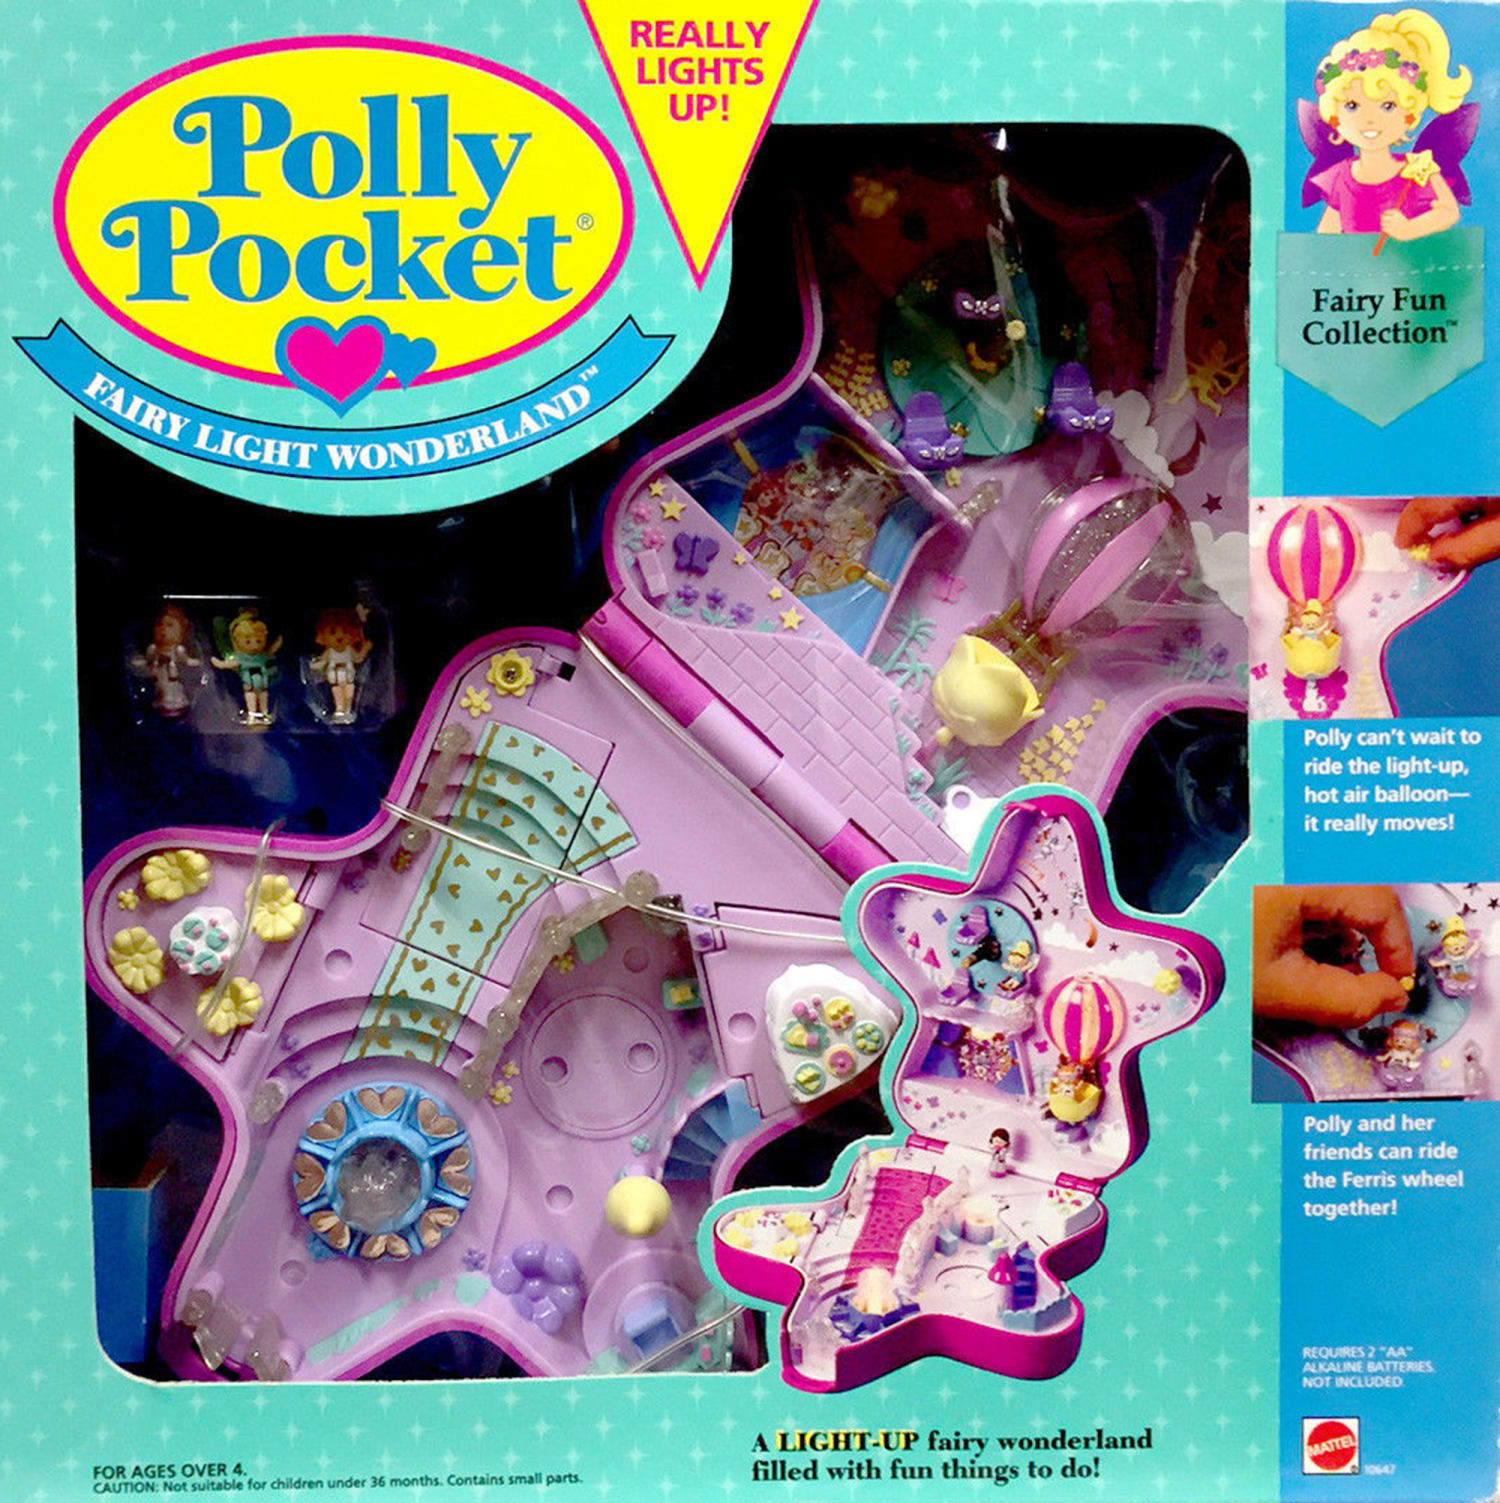 polly pocket toys 1990s